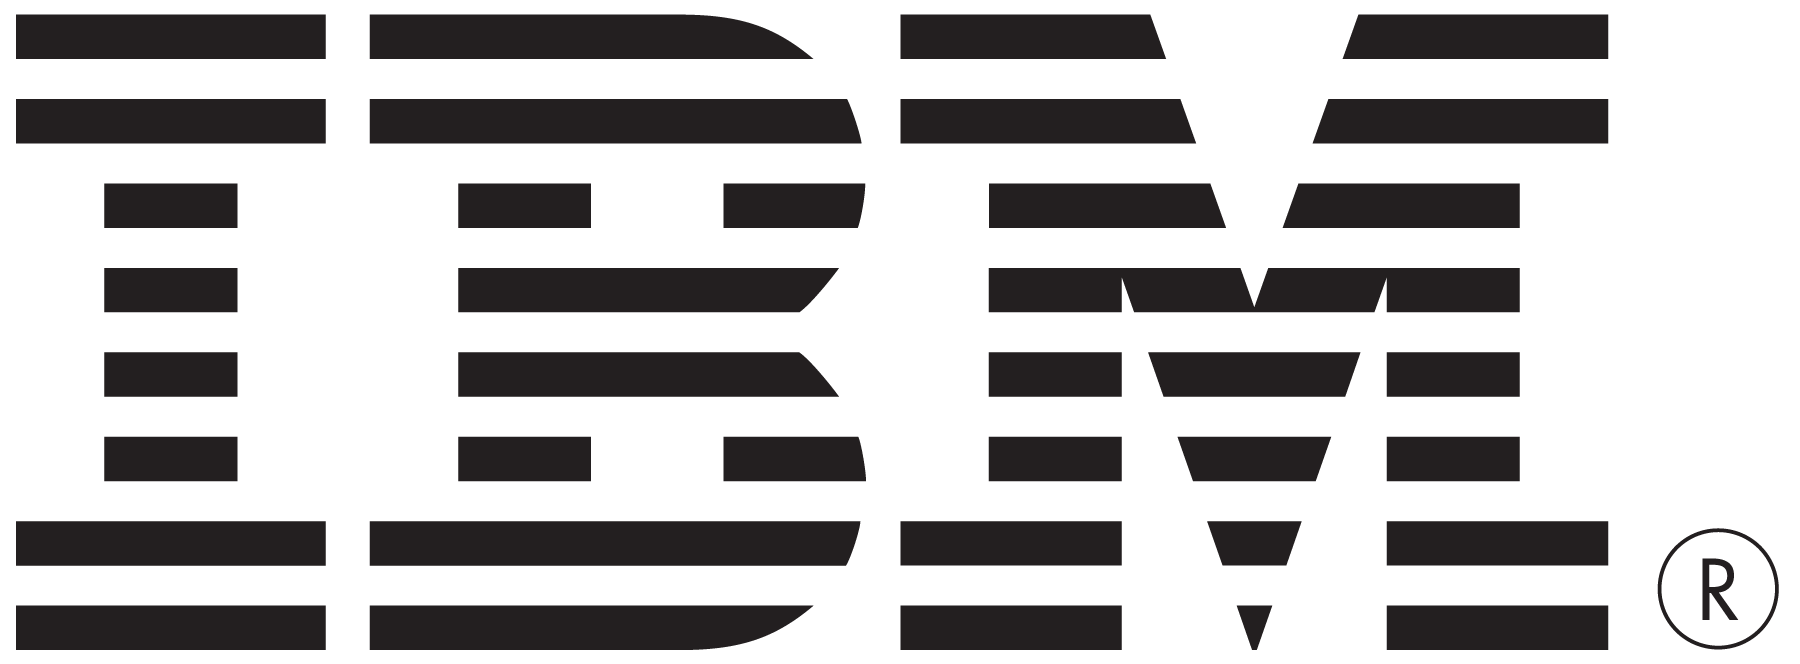 ibm logo 2